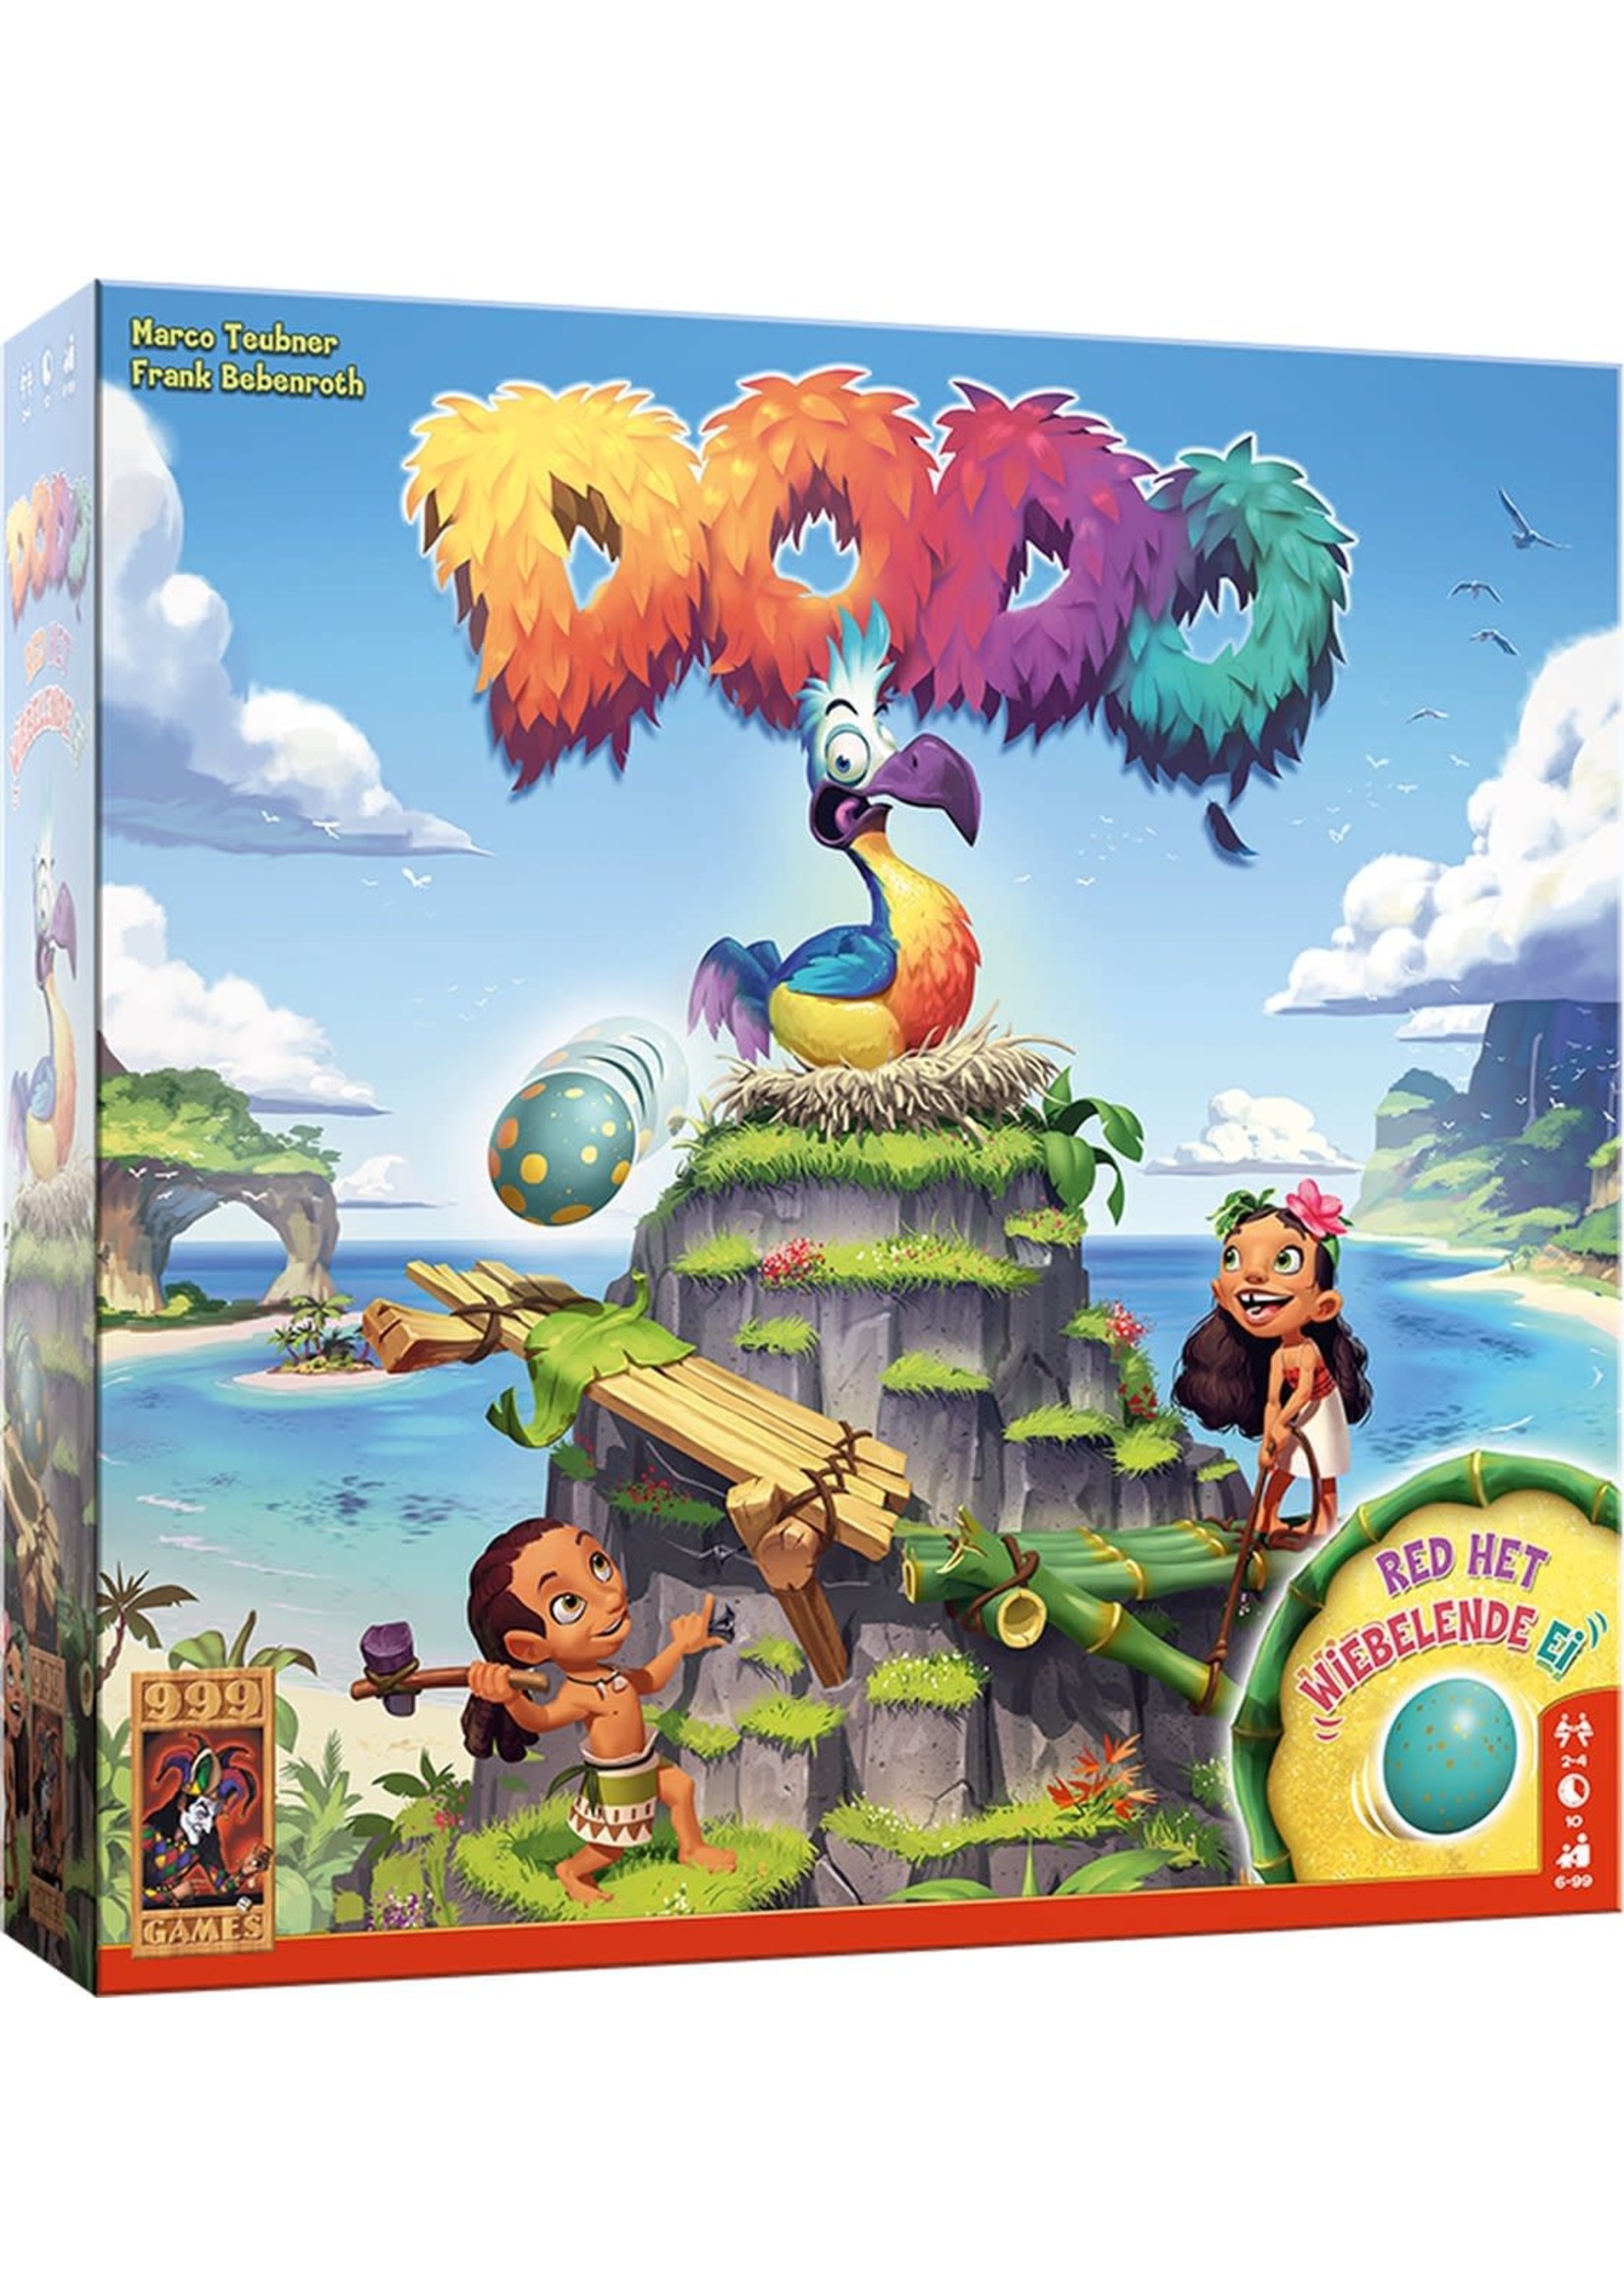 999 Games Bordspel Dodo